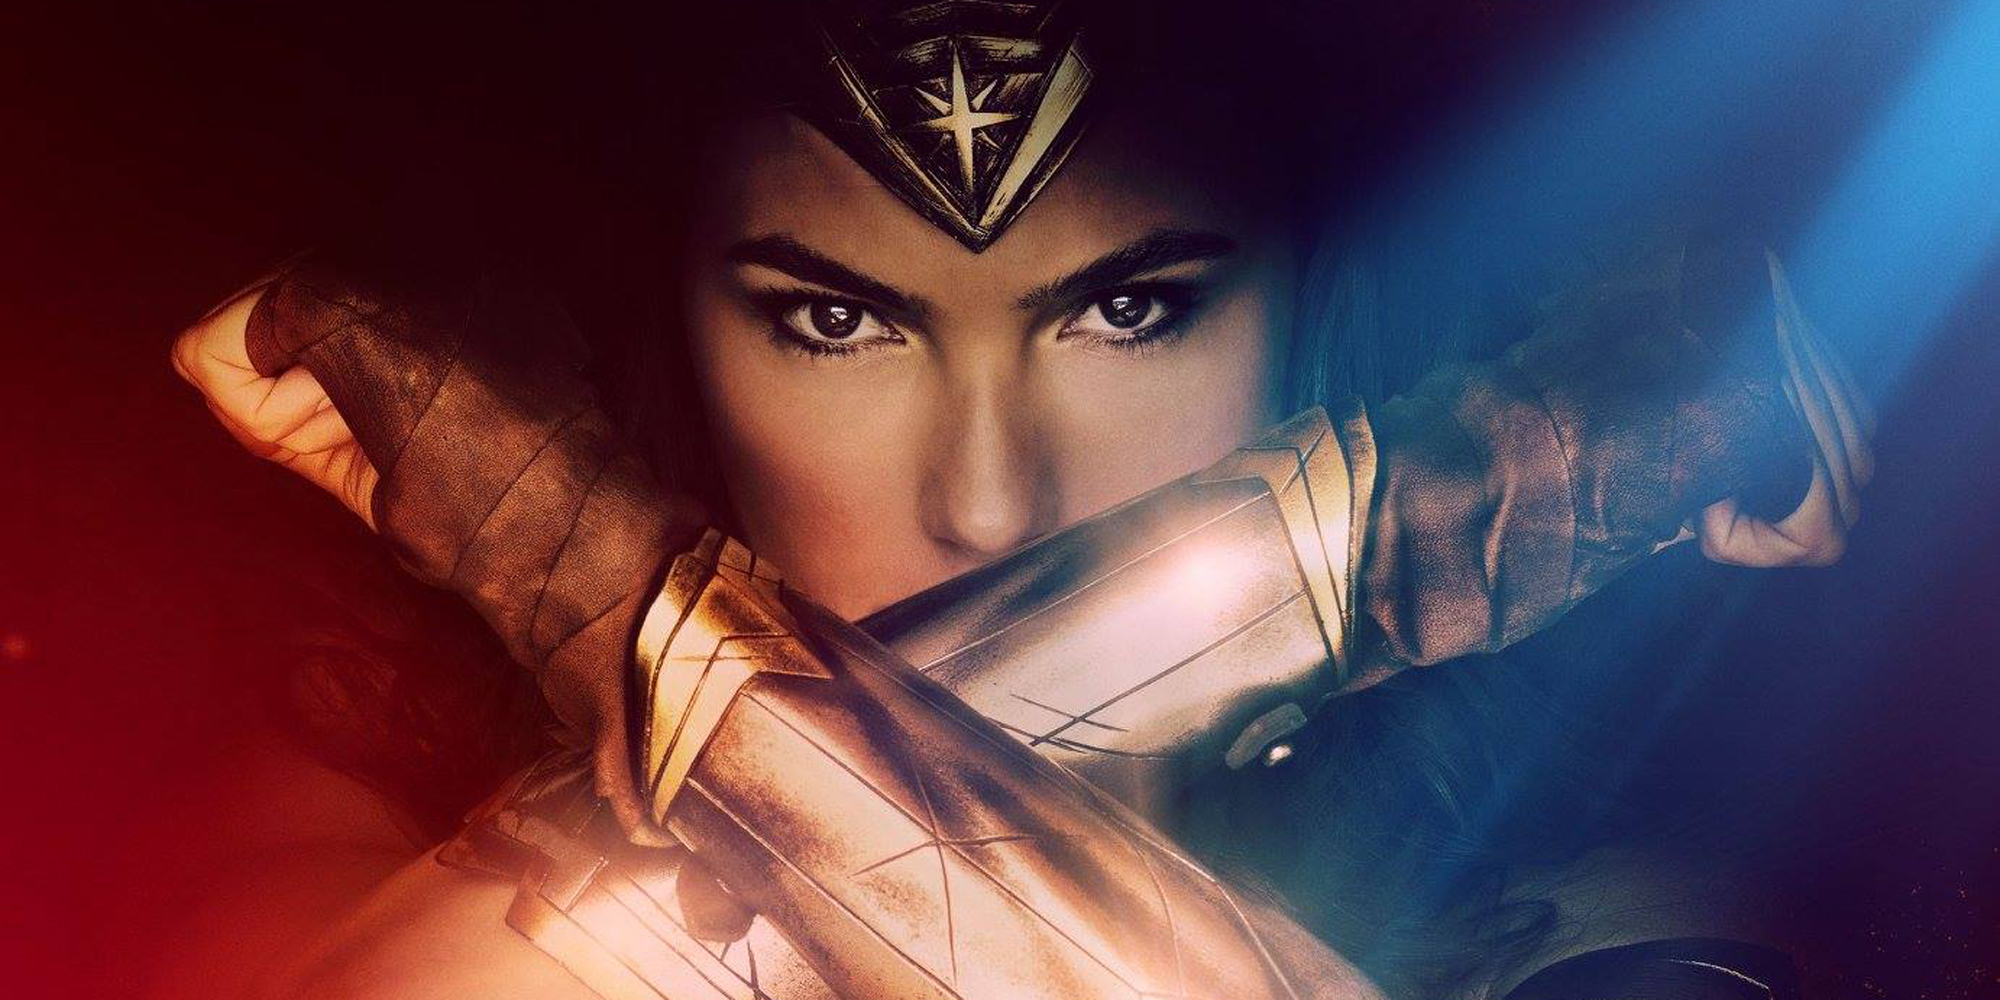  Un nouveau trailer pour Wonder Woman